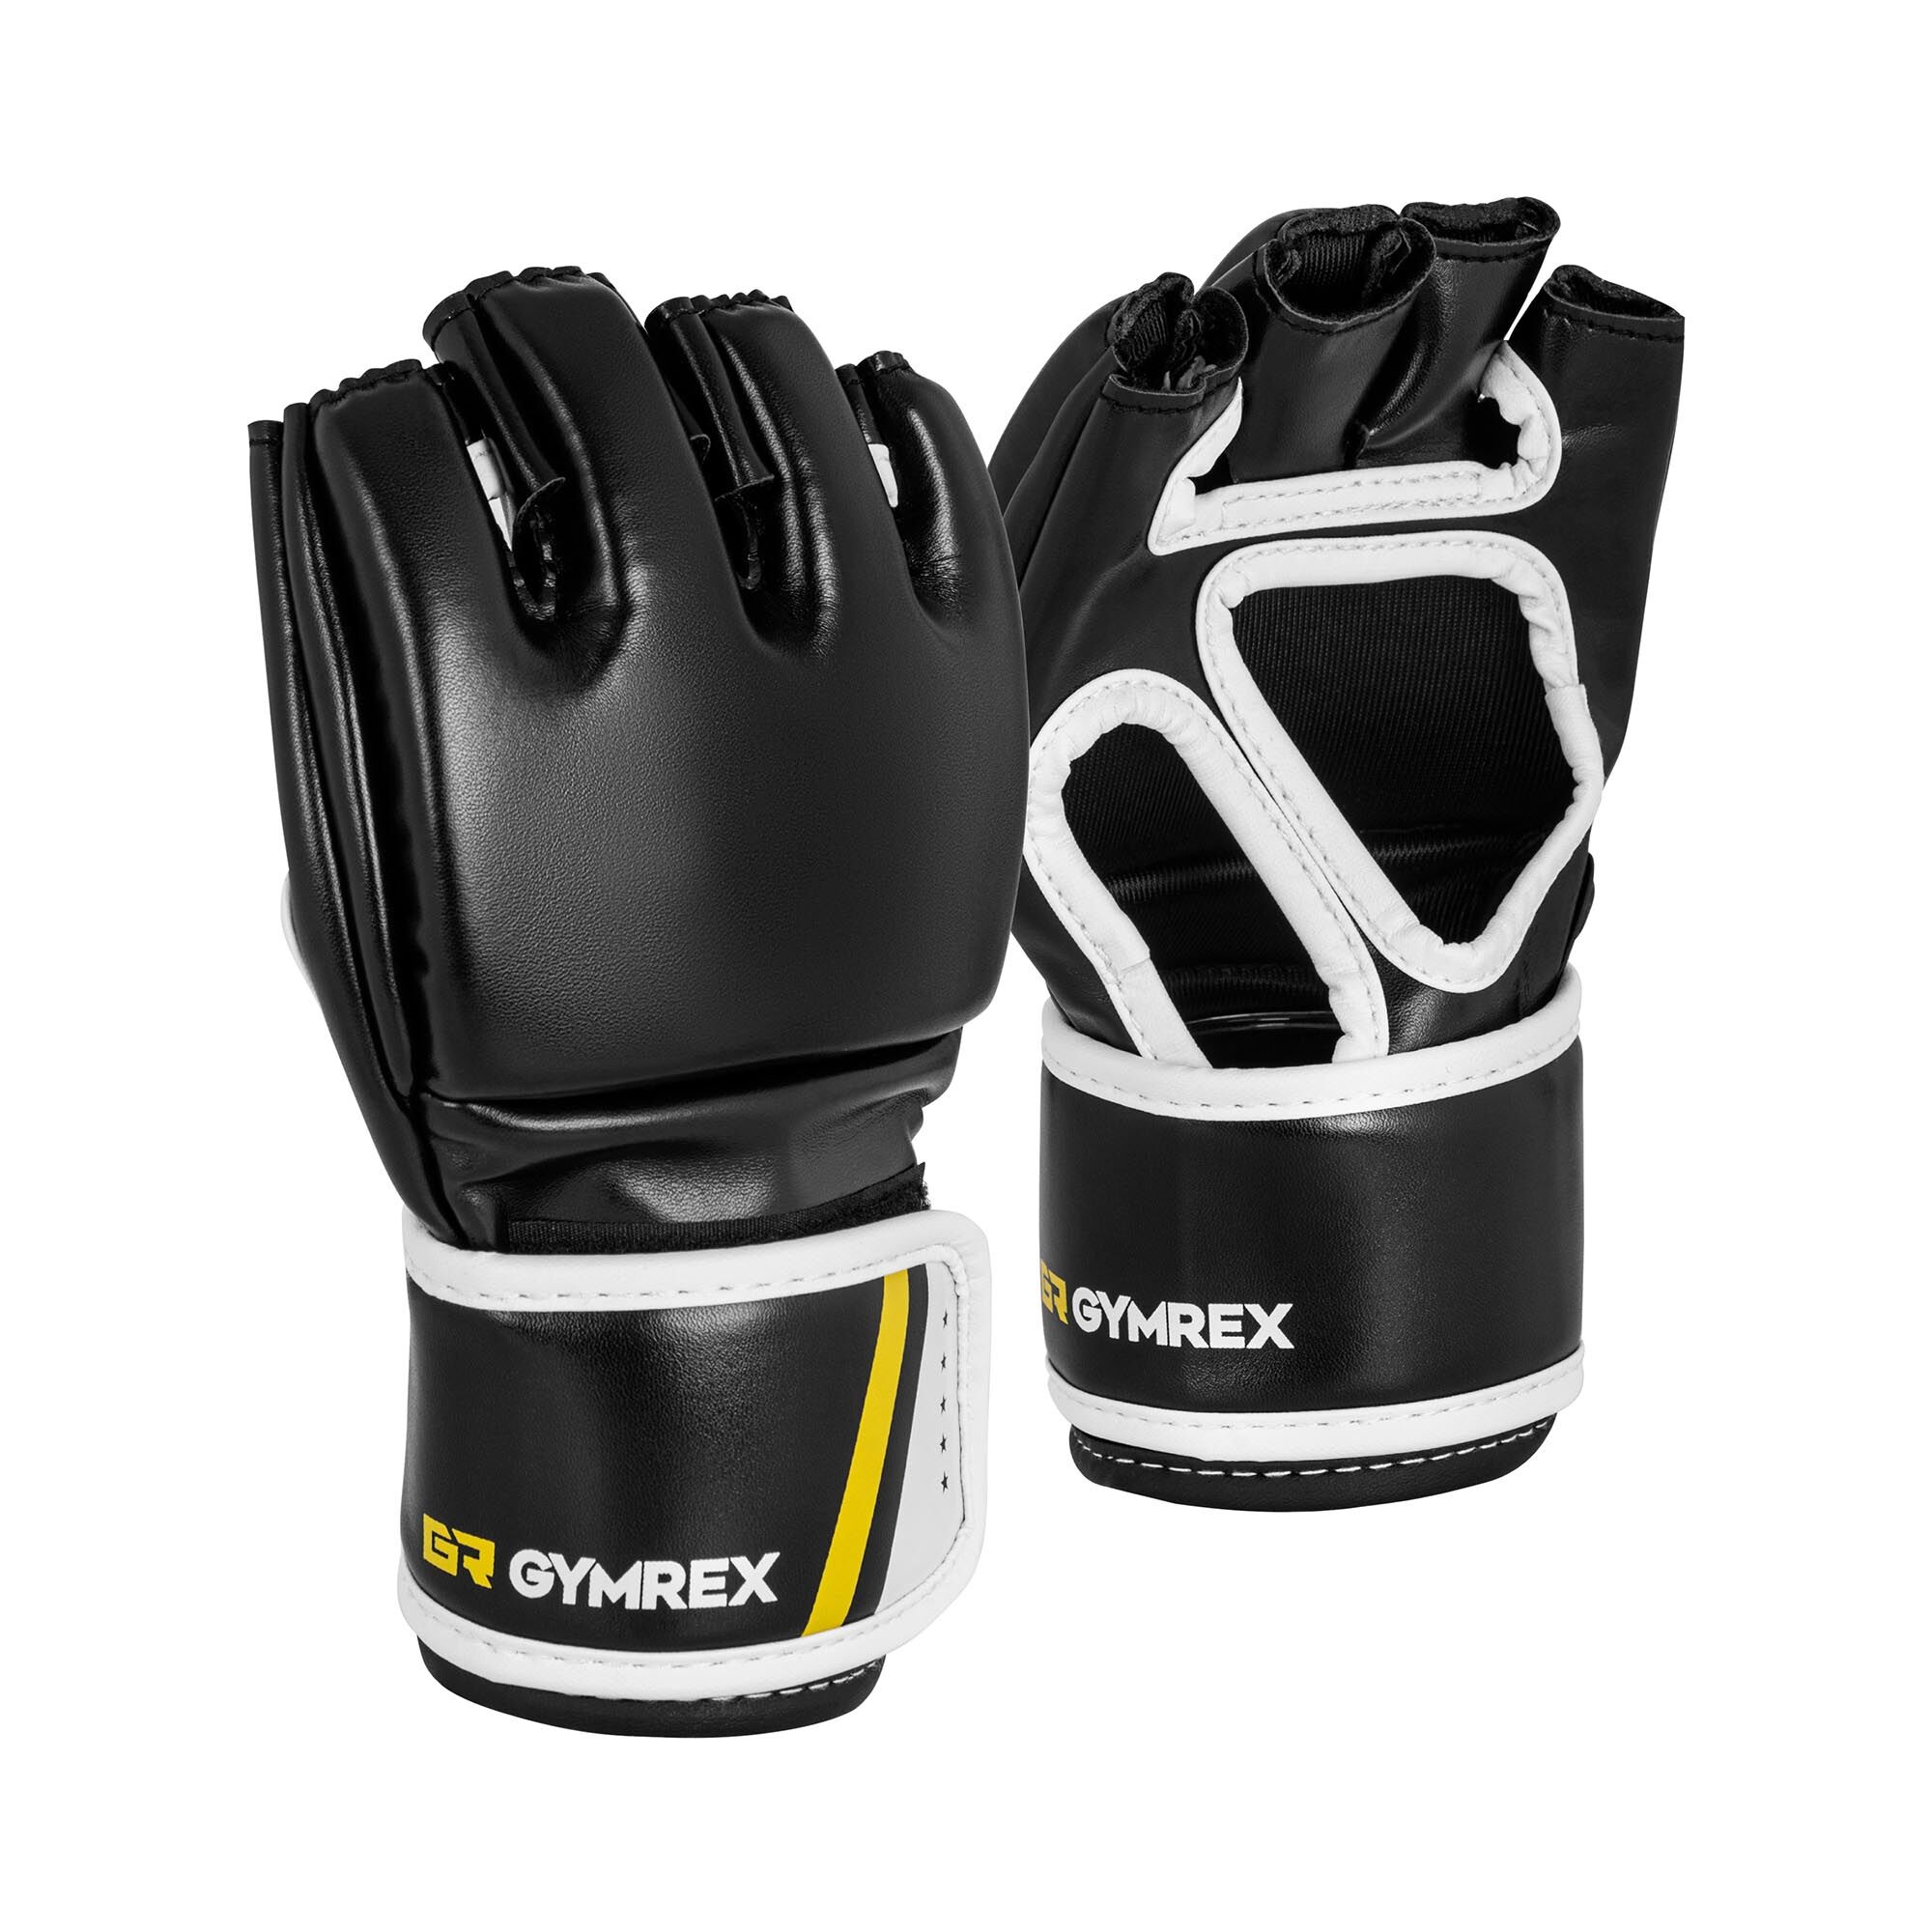 Gymrex MMA Handschuhe - Gr. L/XL - schwarz - ohne Daumen